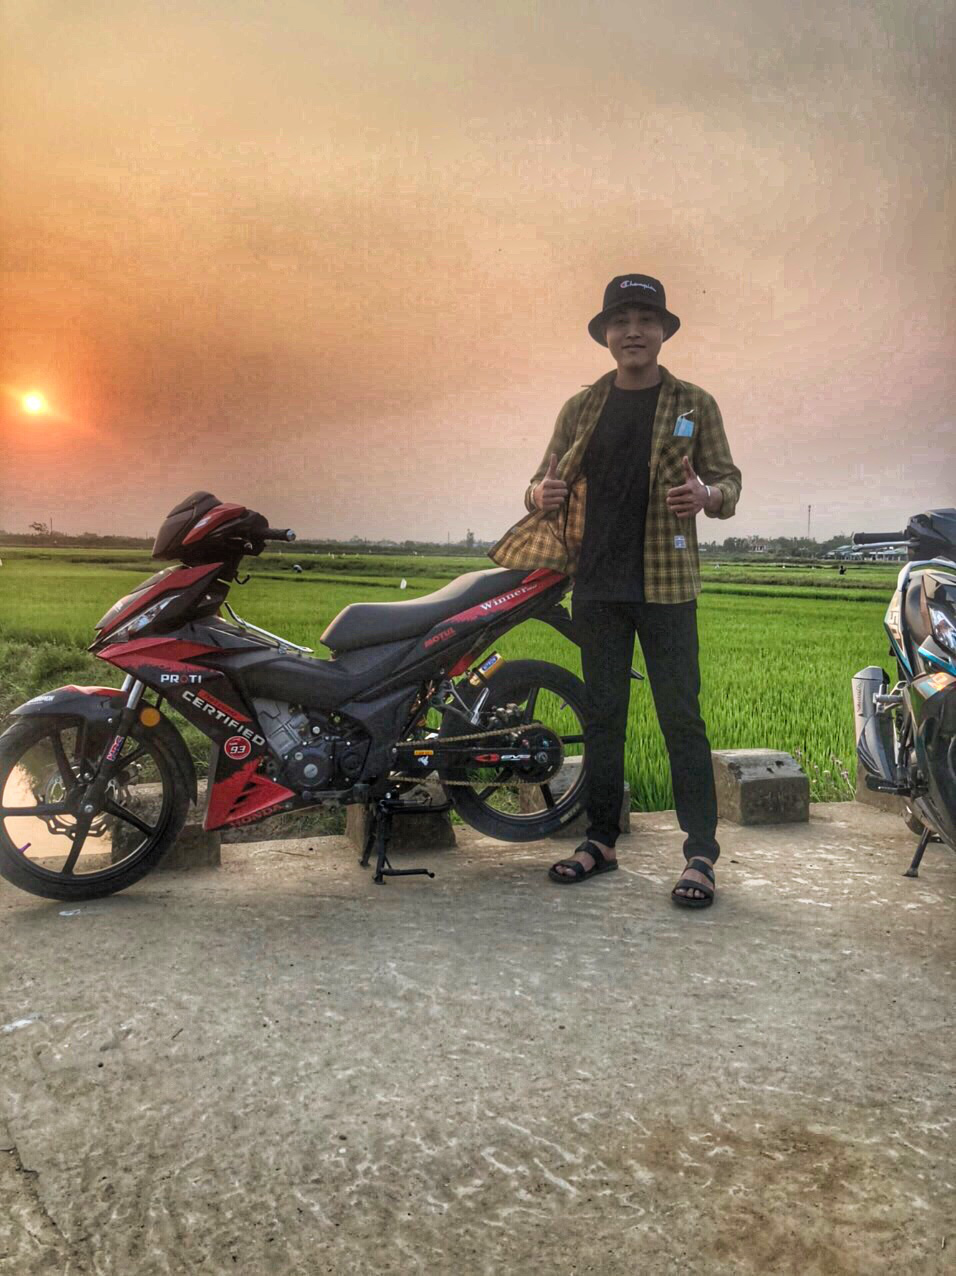 Biker Việt, một trong những bộ lạc biker vô cùng đặc biệt. Nếu bạn là một người yêu thích lai xe, đam mê phong cách biker, hãy đến với chúng tôi để khám phá thế giới tự do, sự độc lập và trọn vẹn. Chúc bạn có những trải nghiệm tuyệt vời bên những người bạn đồng hành chung đường.